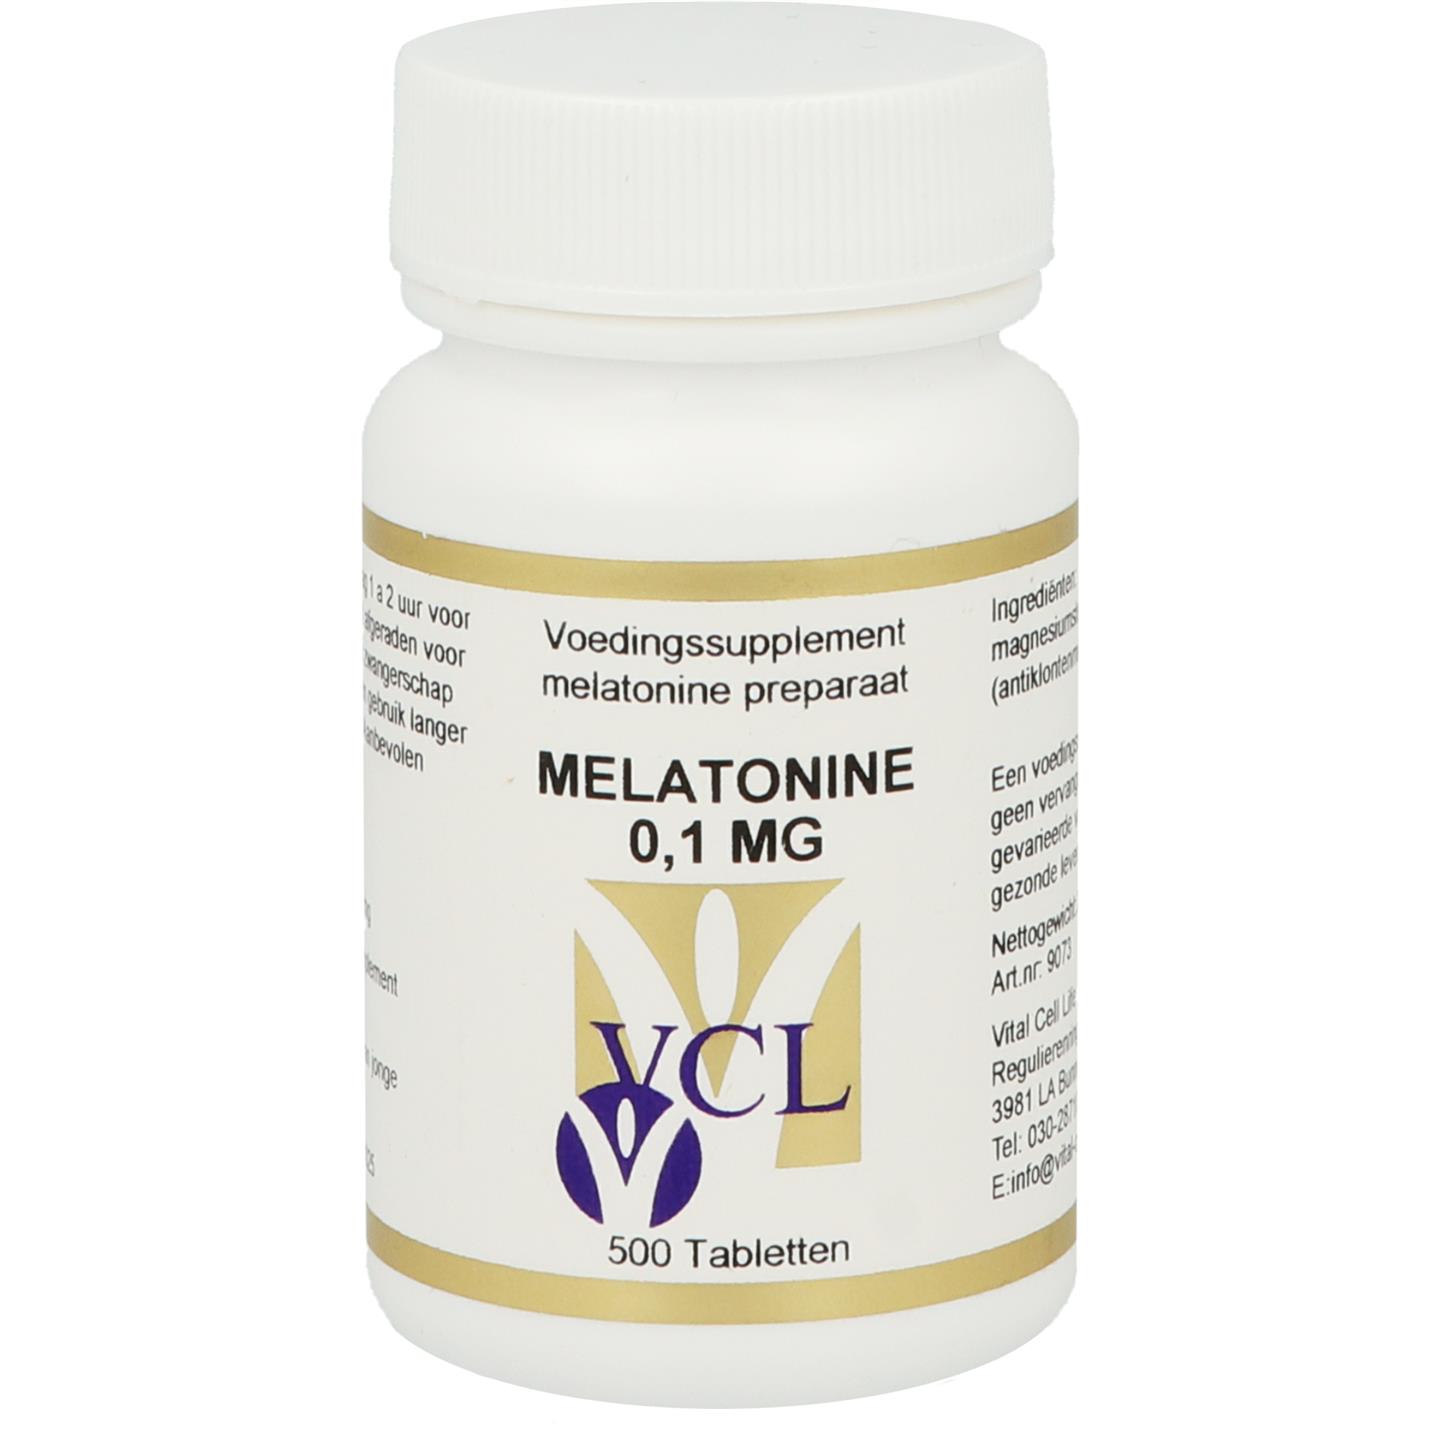 Vcl melatonine 0,1 mg(500 tab)